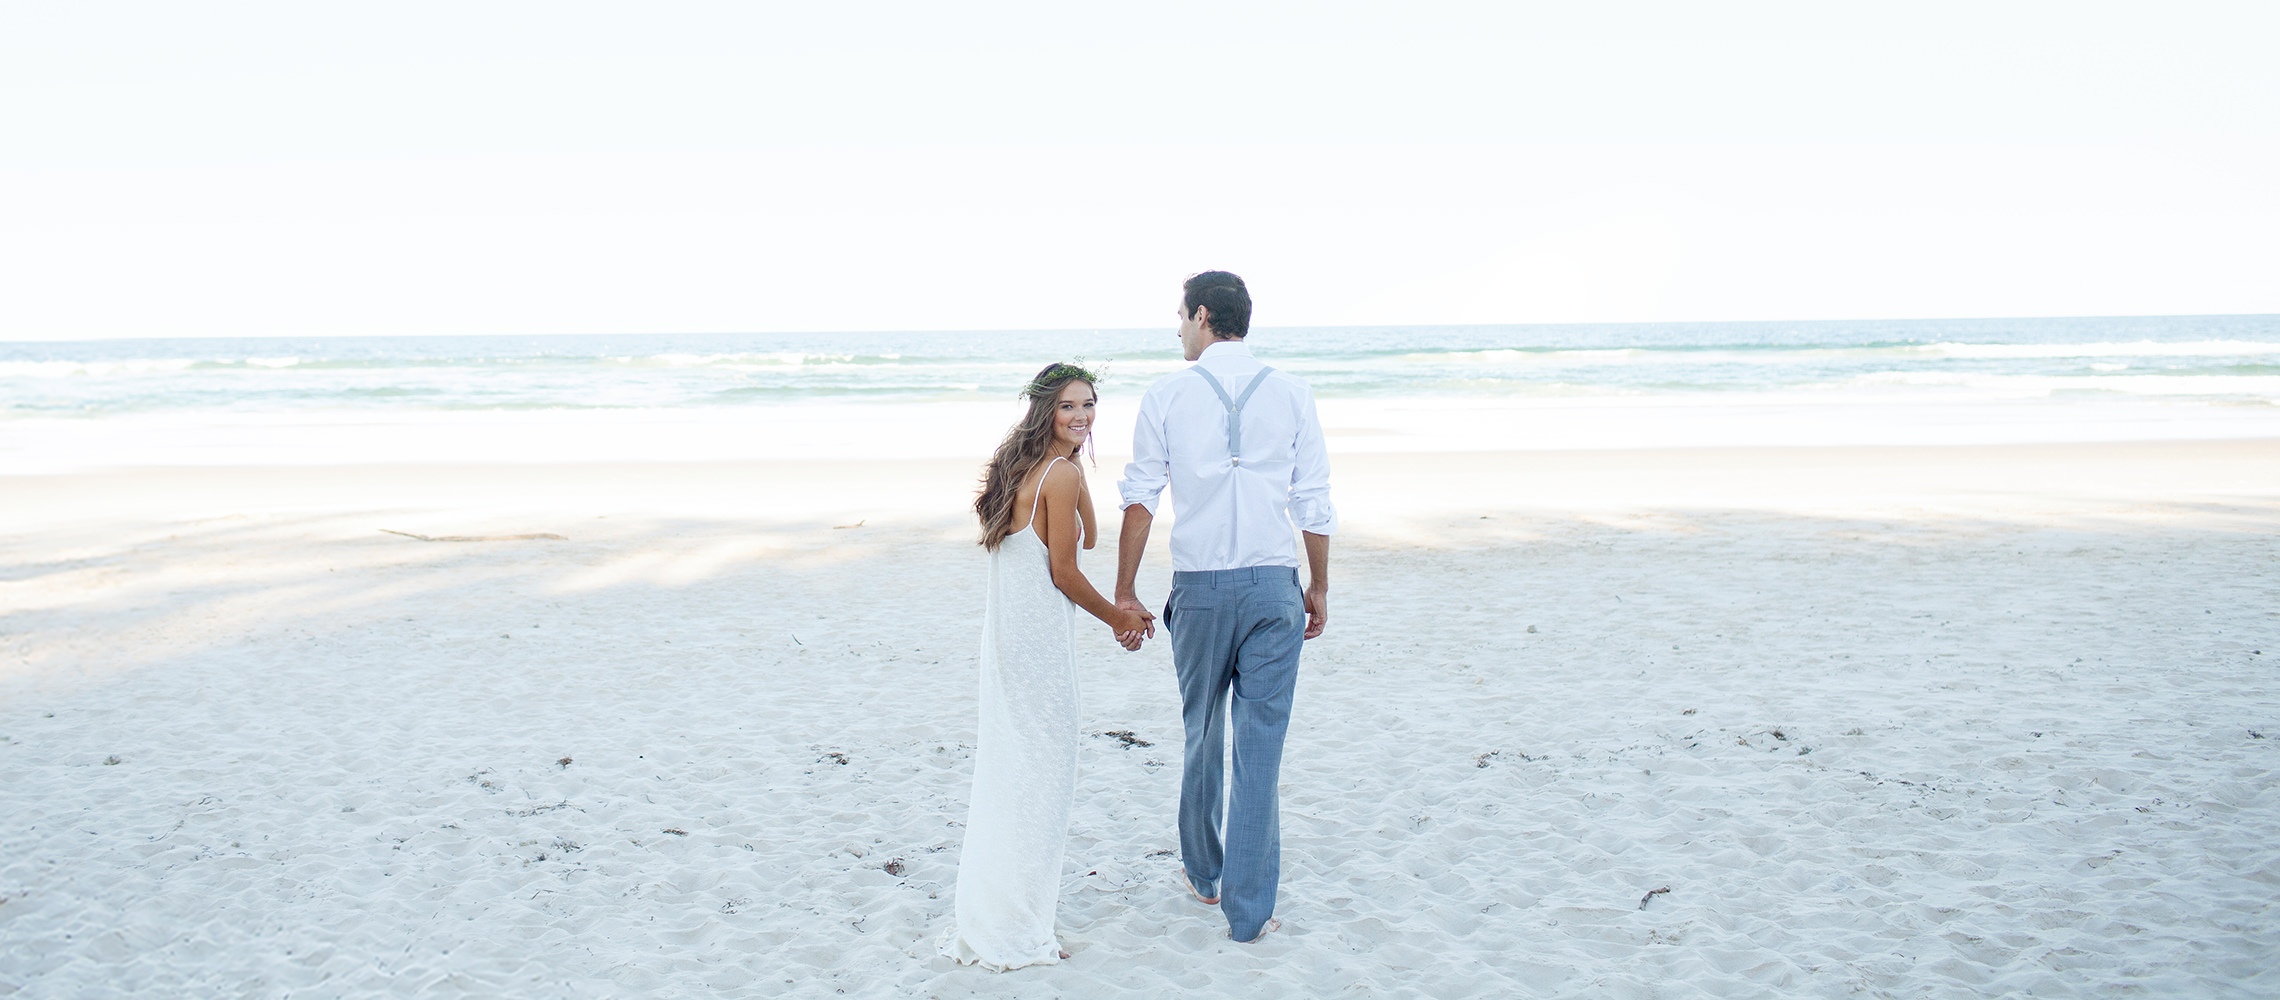 Recém-casados caminhando na praia de areia branca.